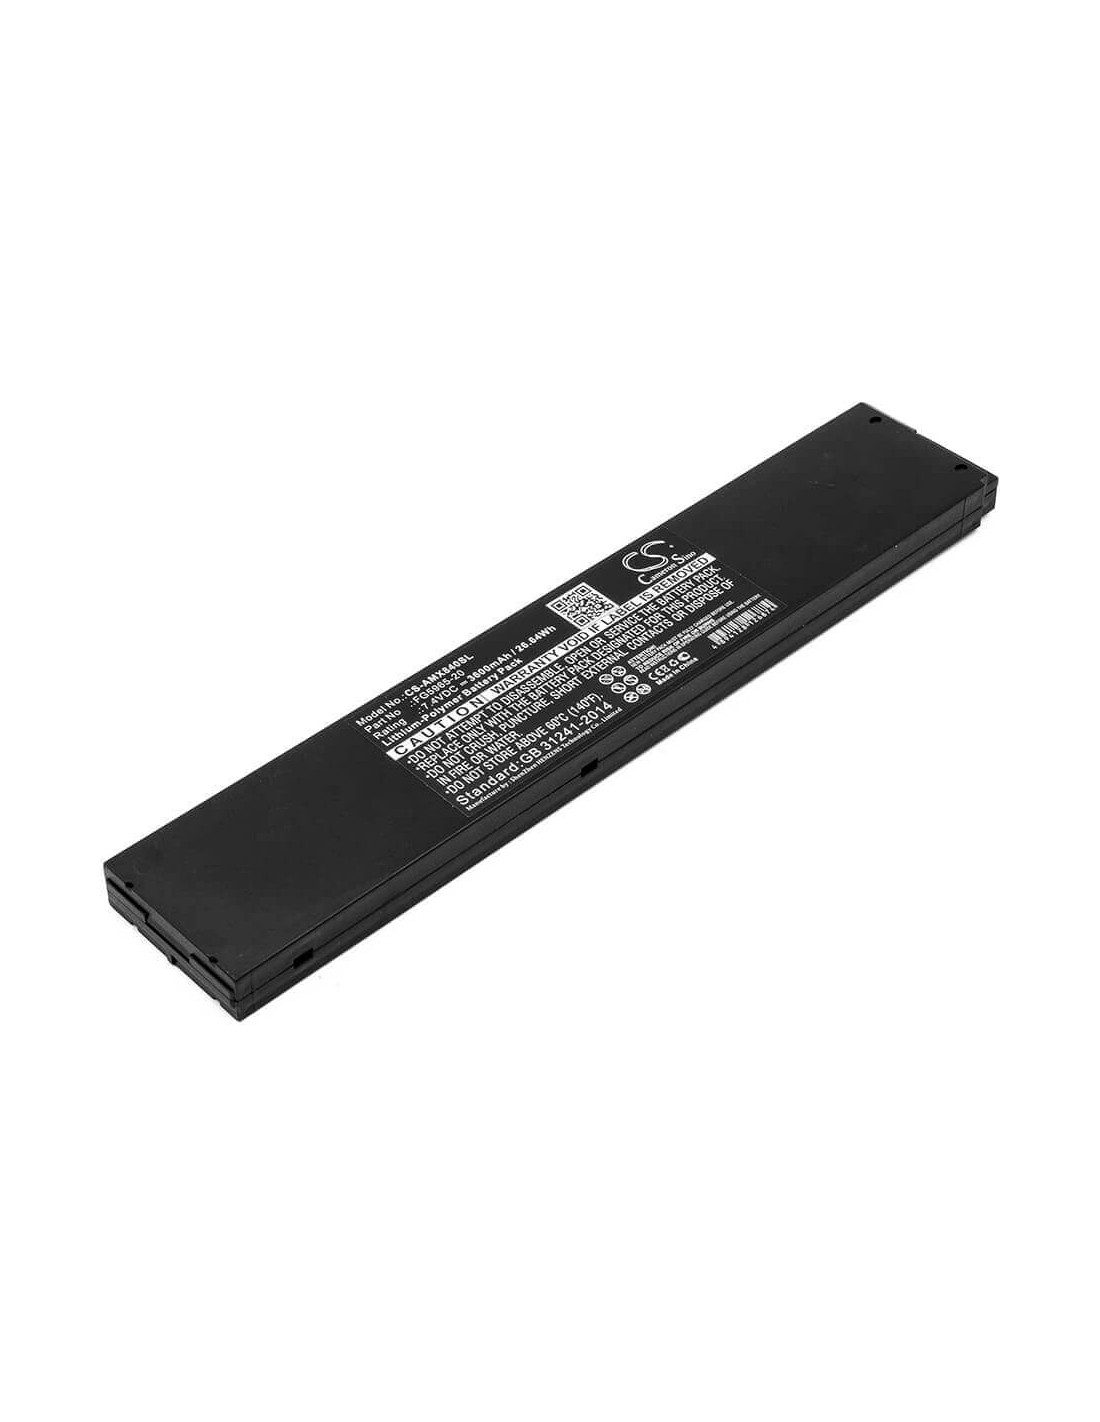 Battery for Amx, Mvp Touch Panels, Mvp-8400, Mvp-8400 Modero Viewpoint 7.4V, 3600mAh - 26.64Wh